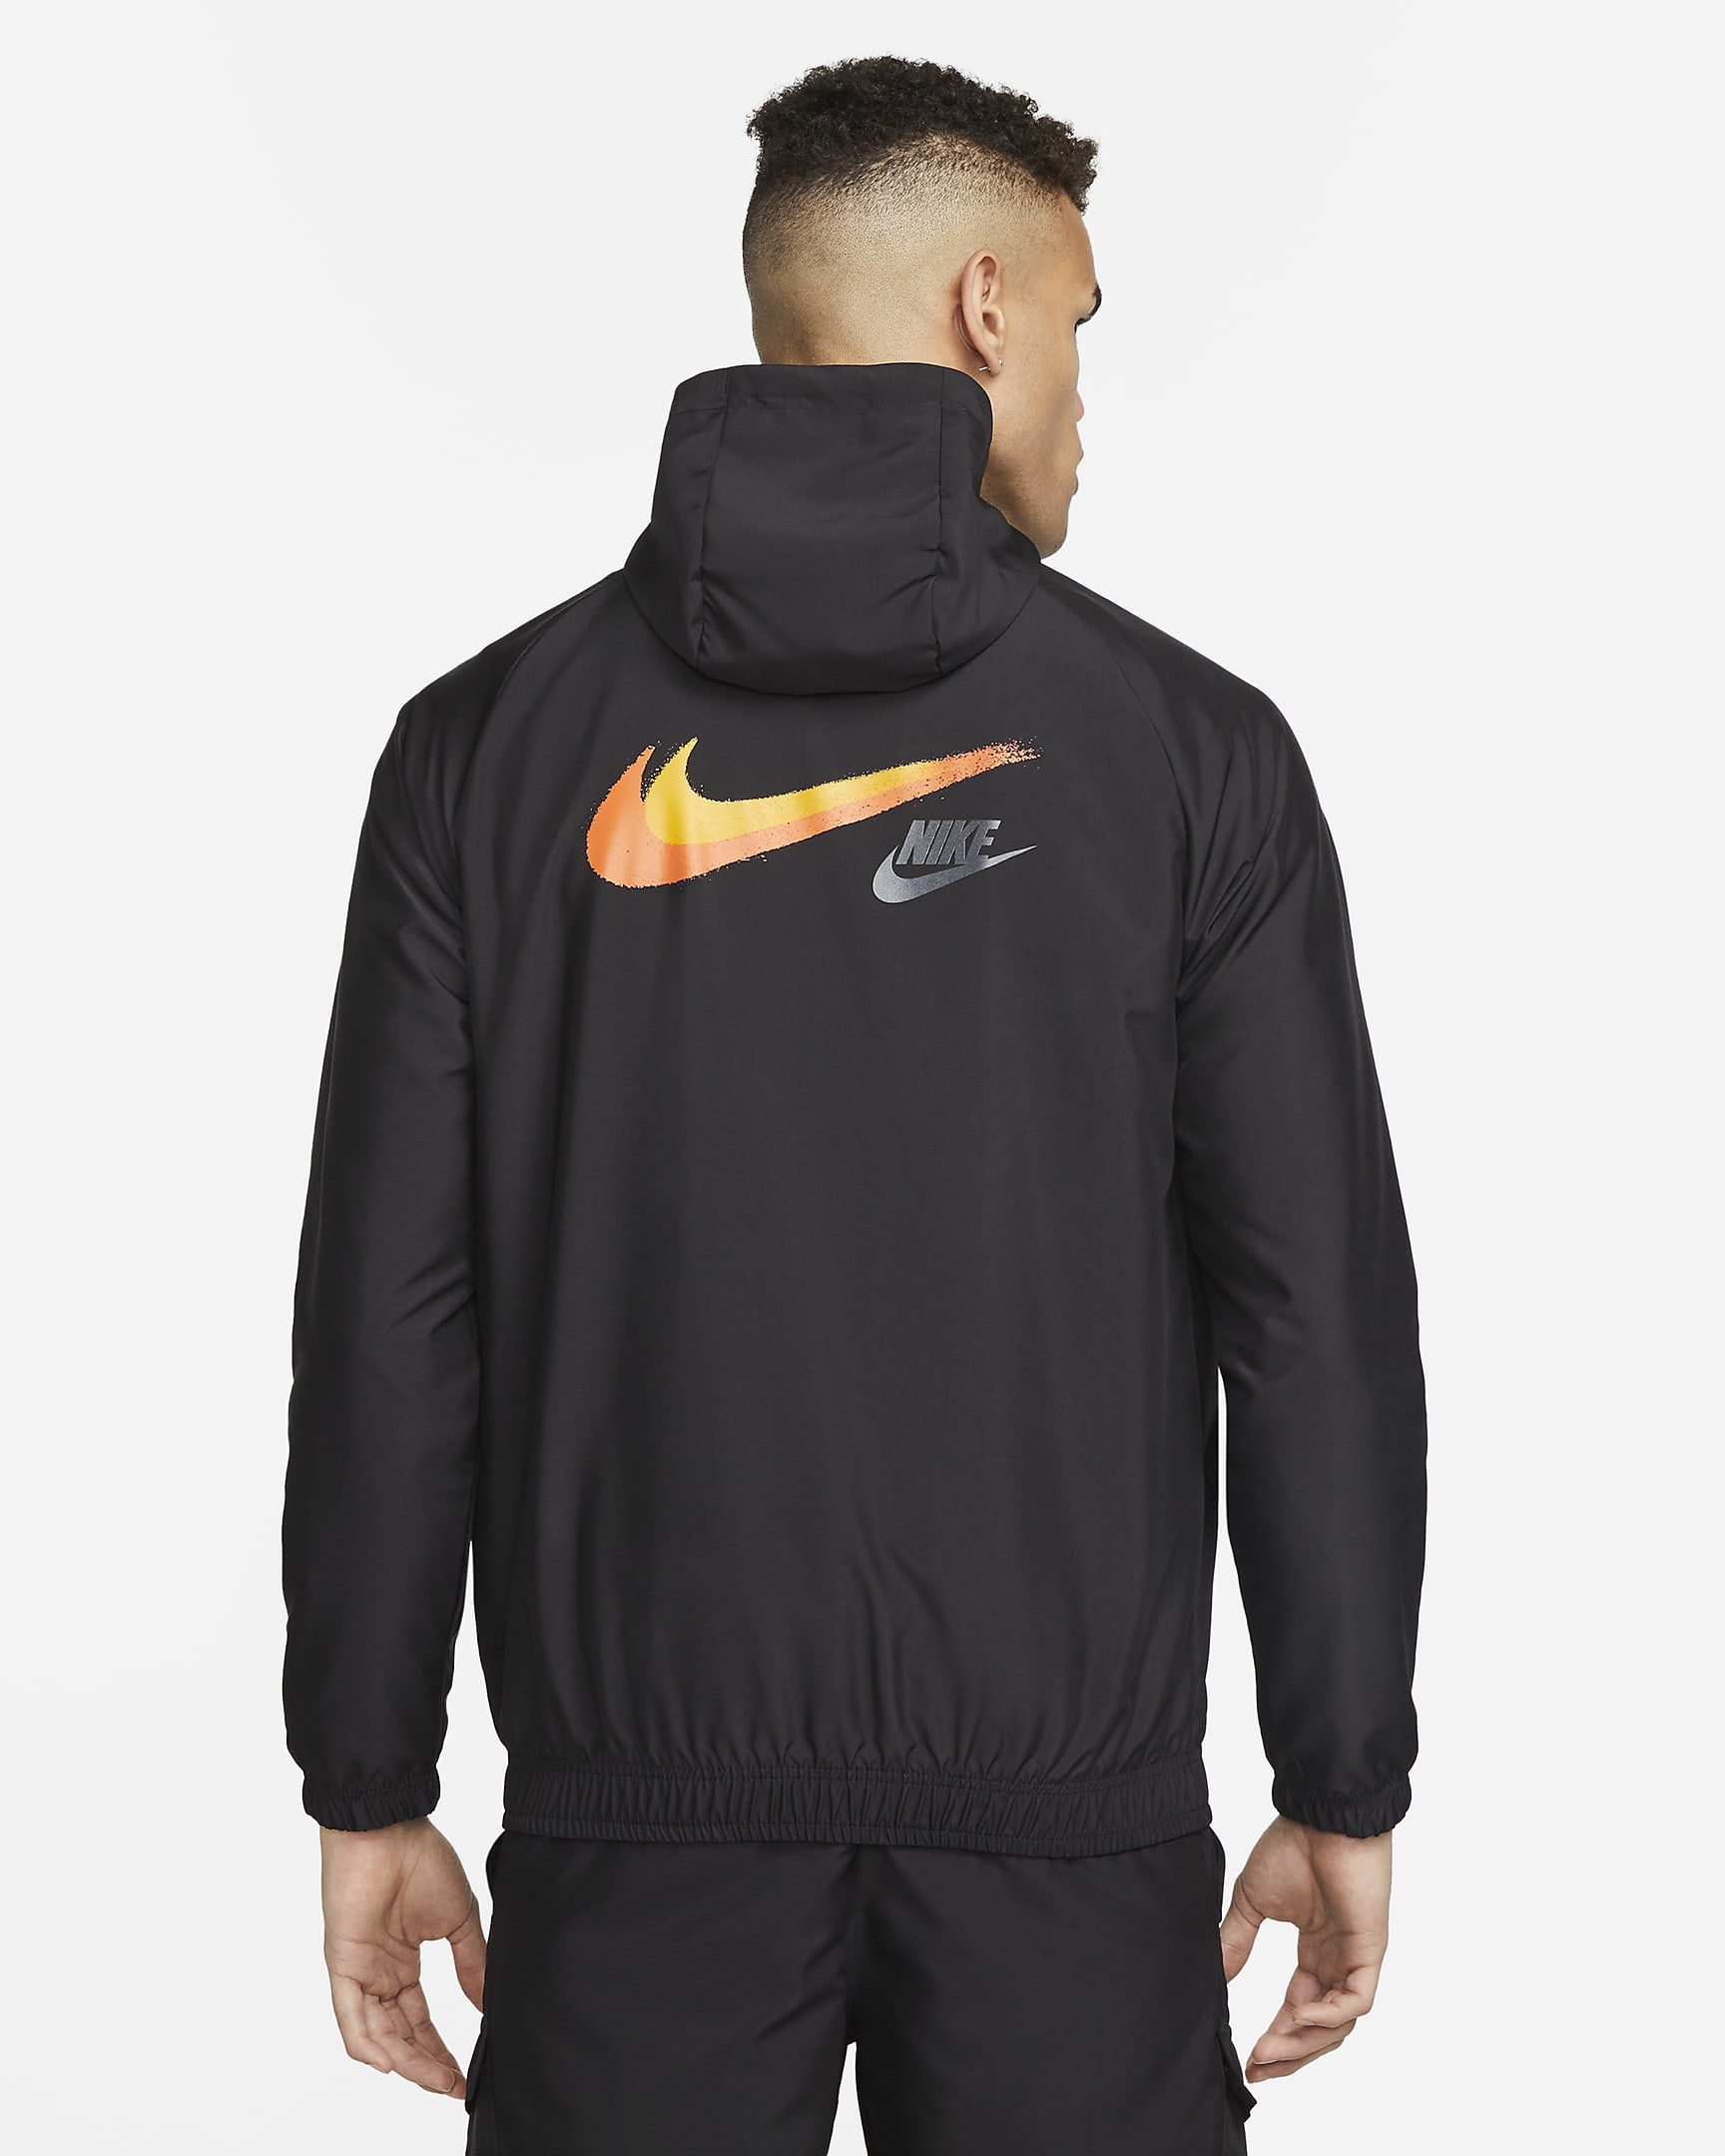 Nike Sportswear Men's Lightweight Woven Jacket. Nike BG